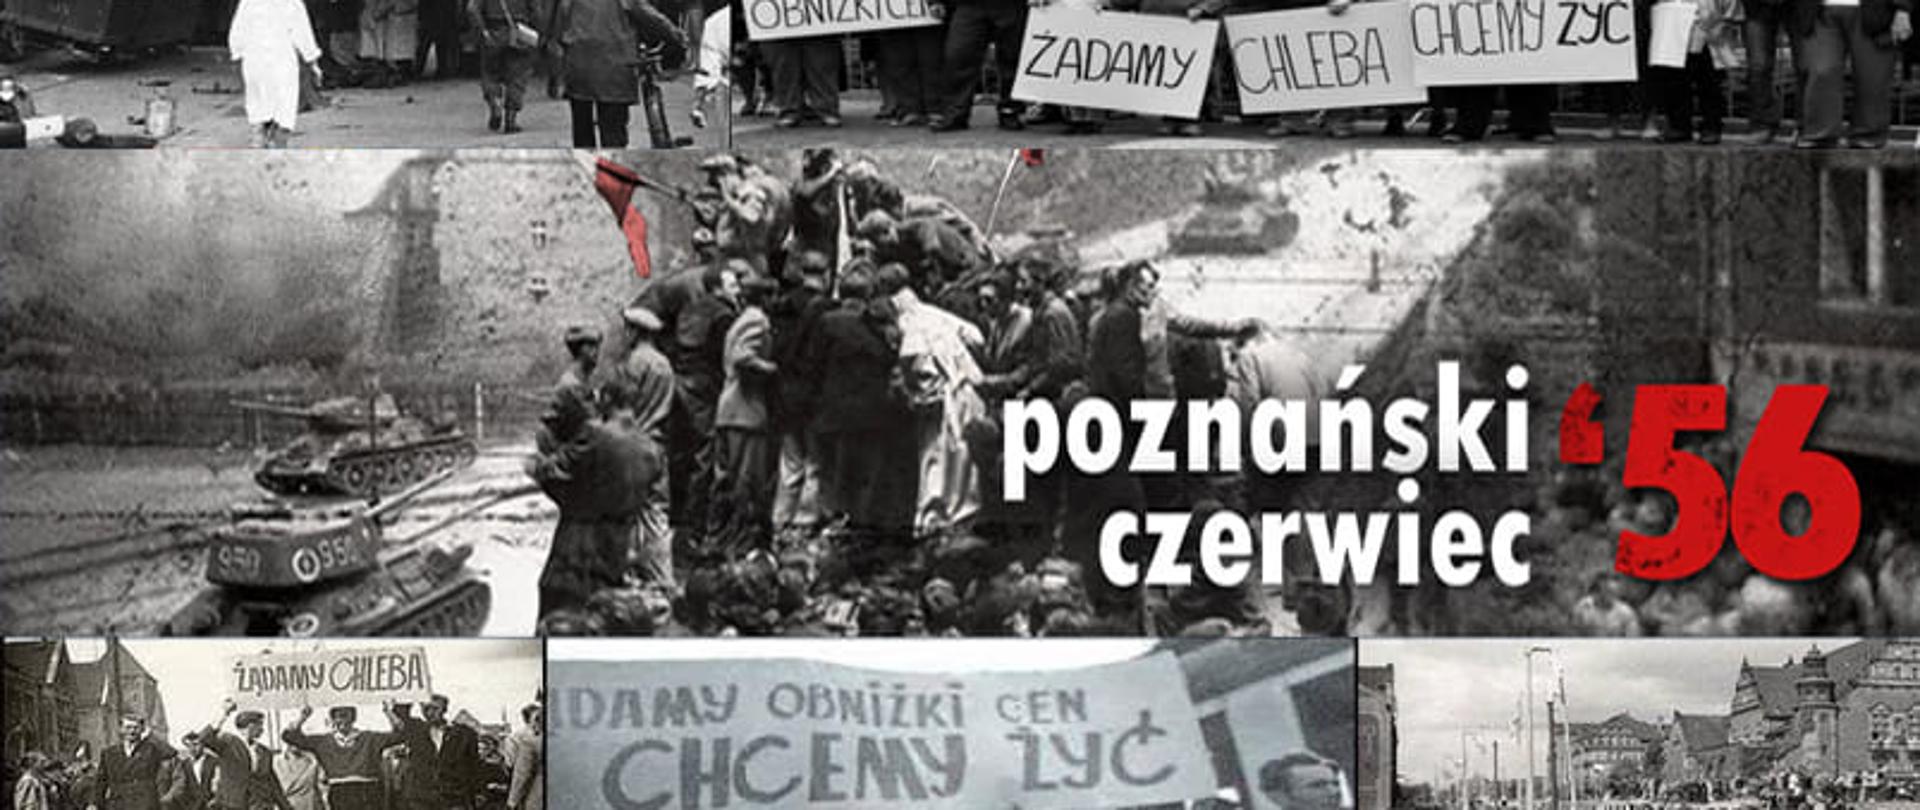 Poznański Czerwiec 1956 - plakat okolicznościowy